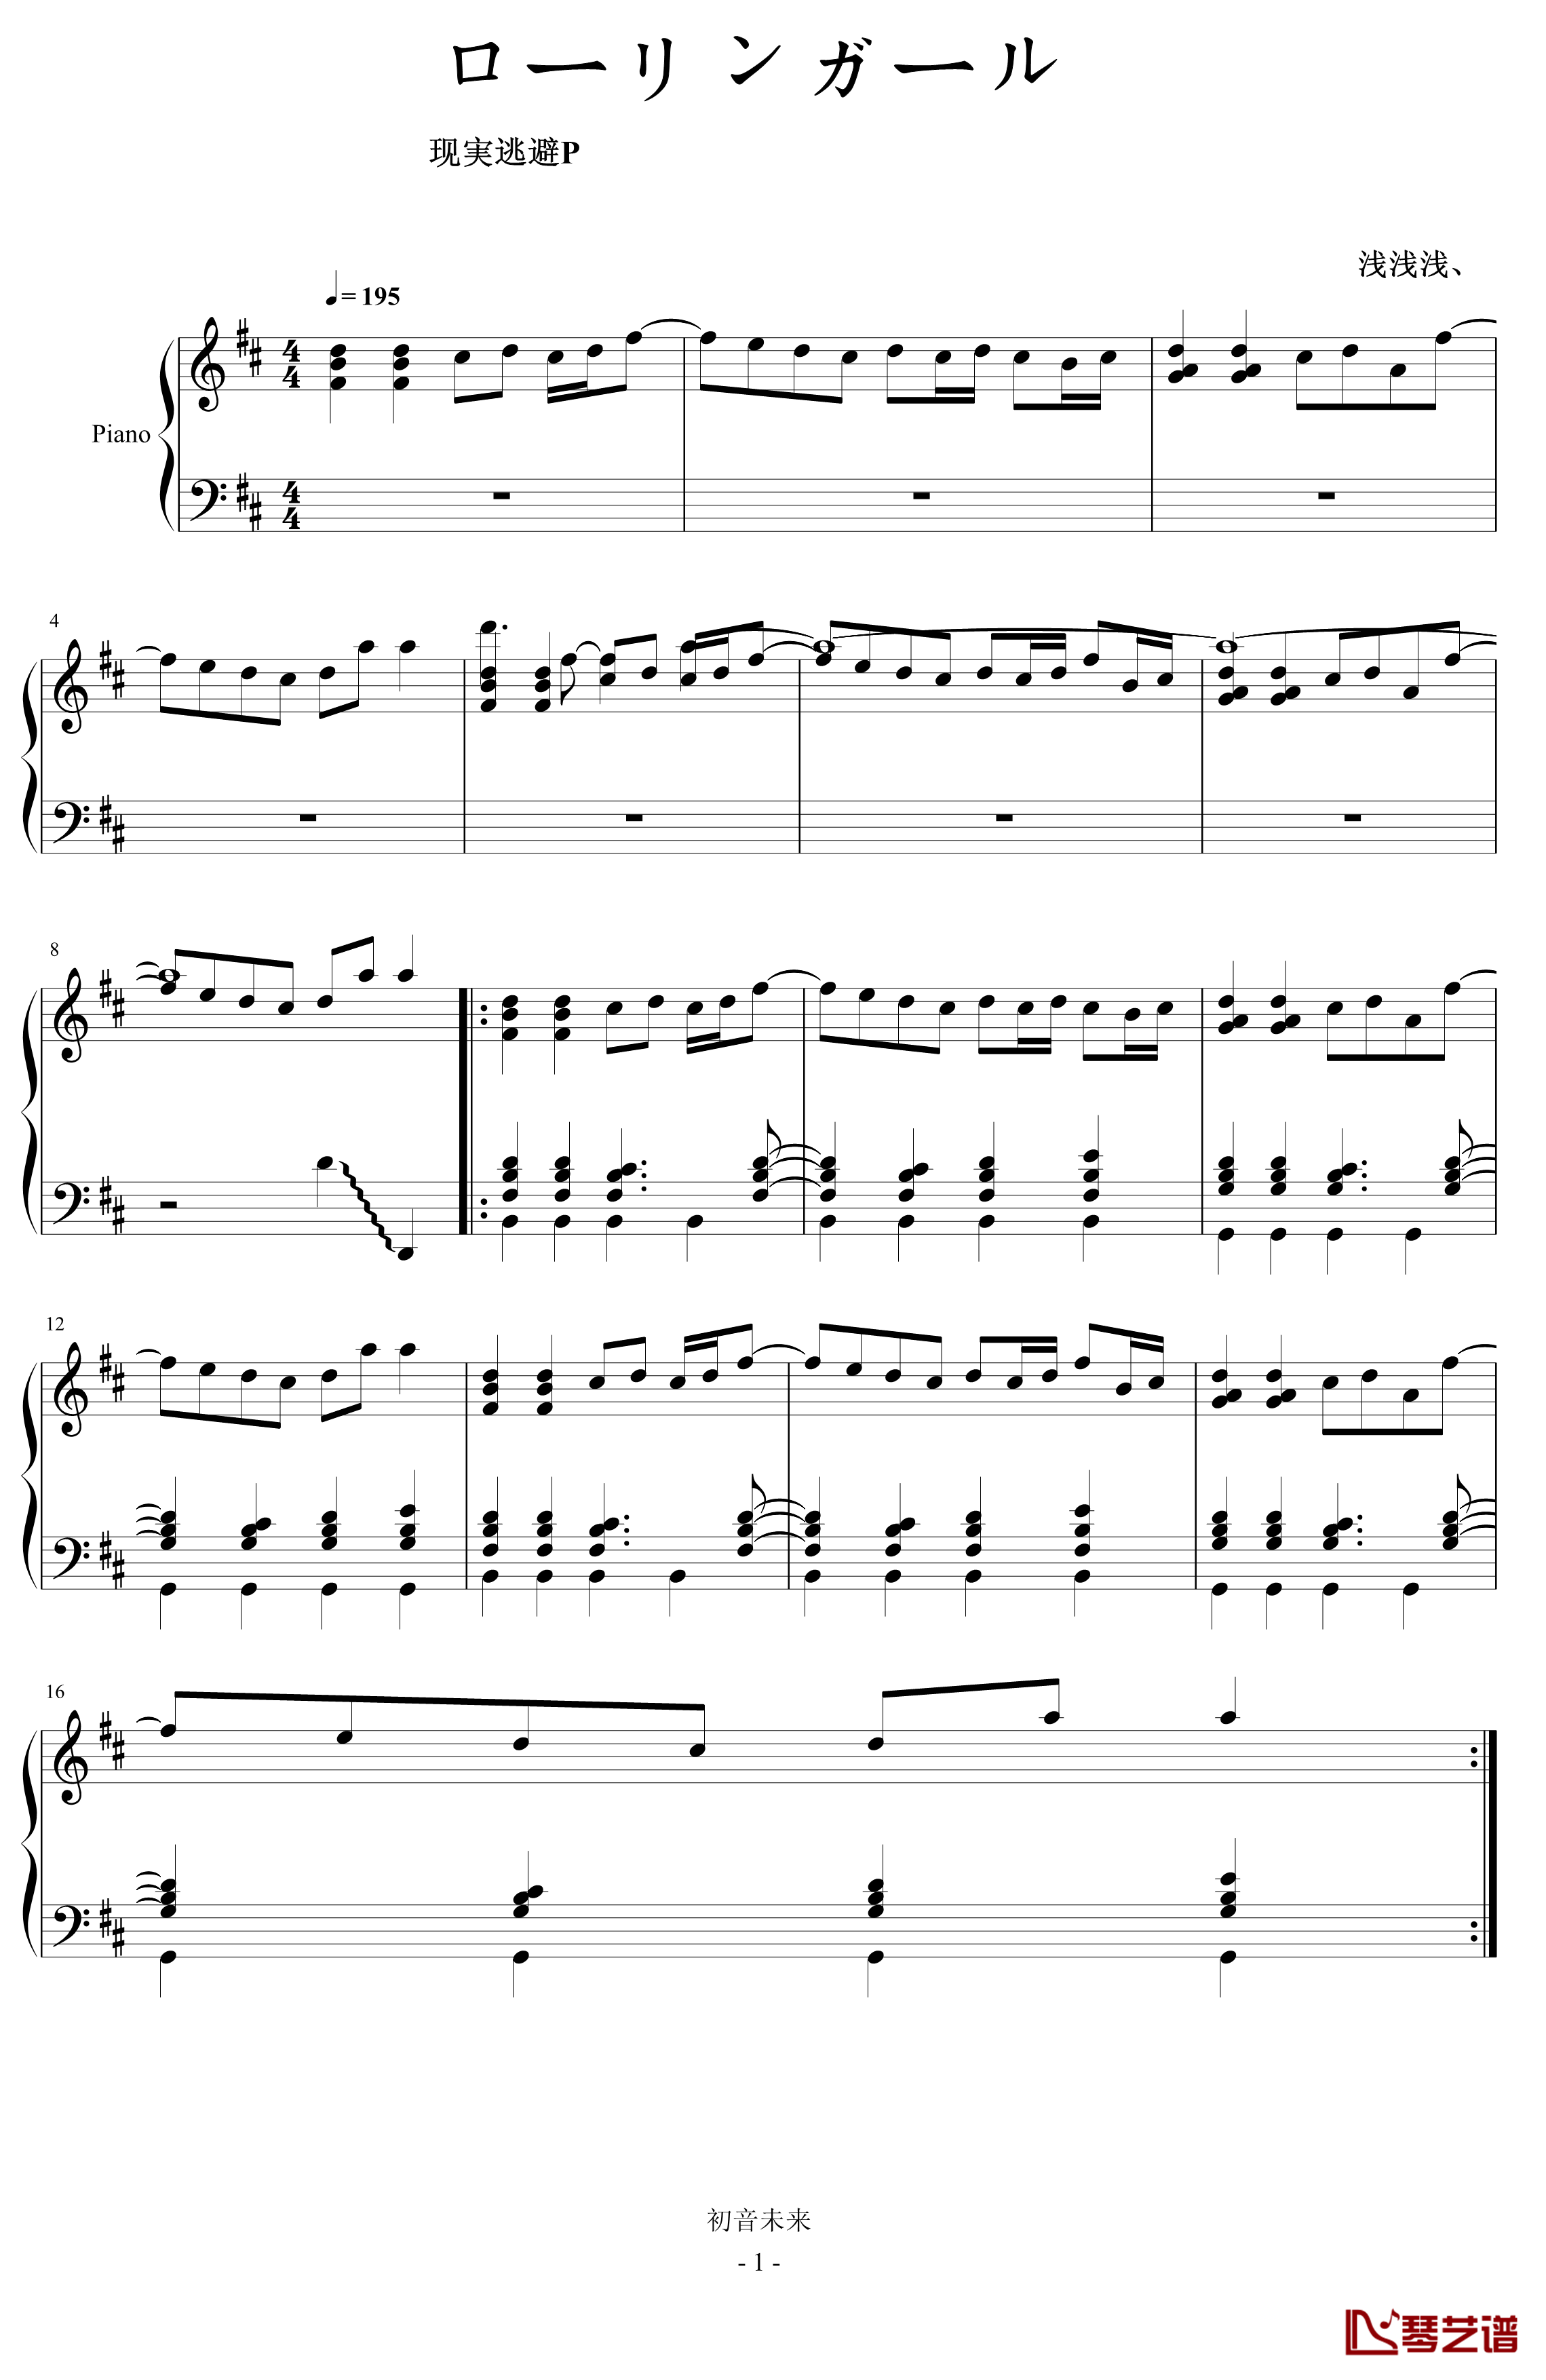 ローリンガール钢琴谱-初音未来1